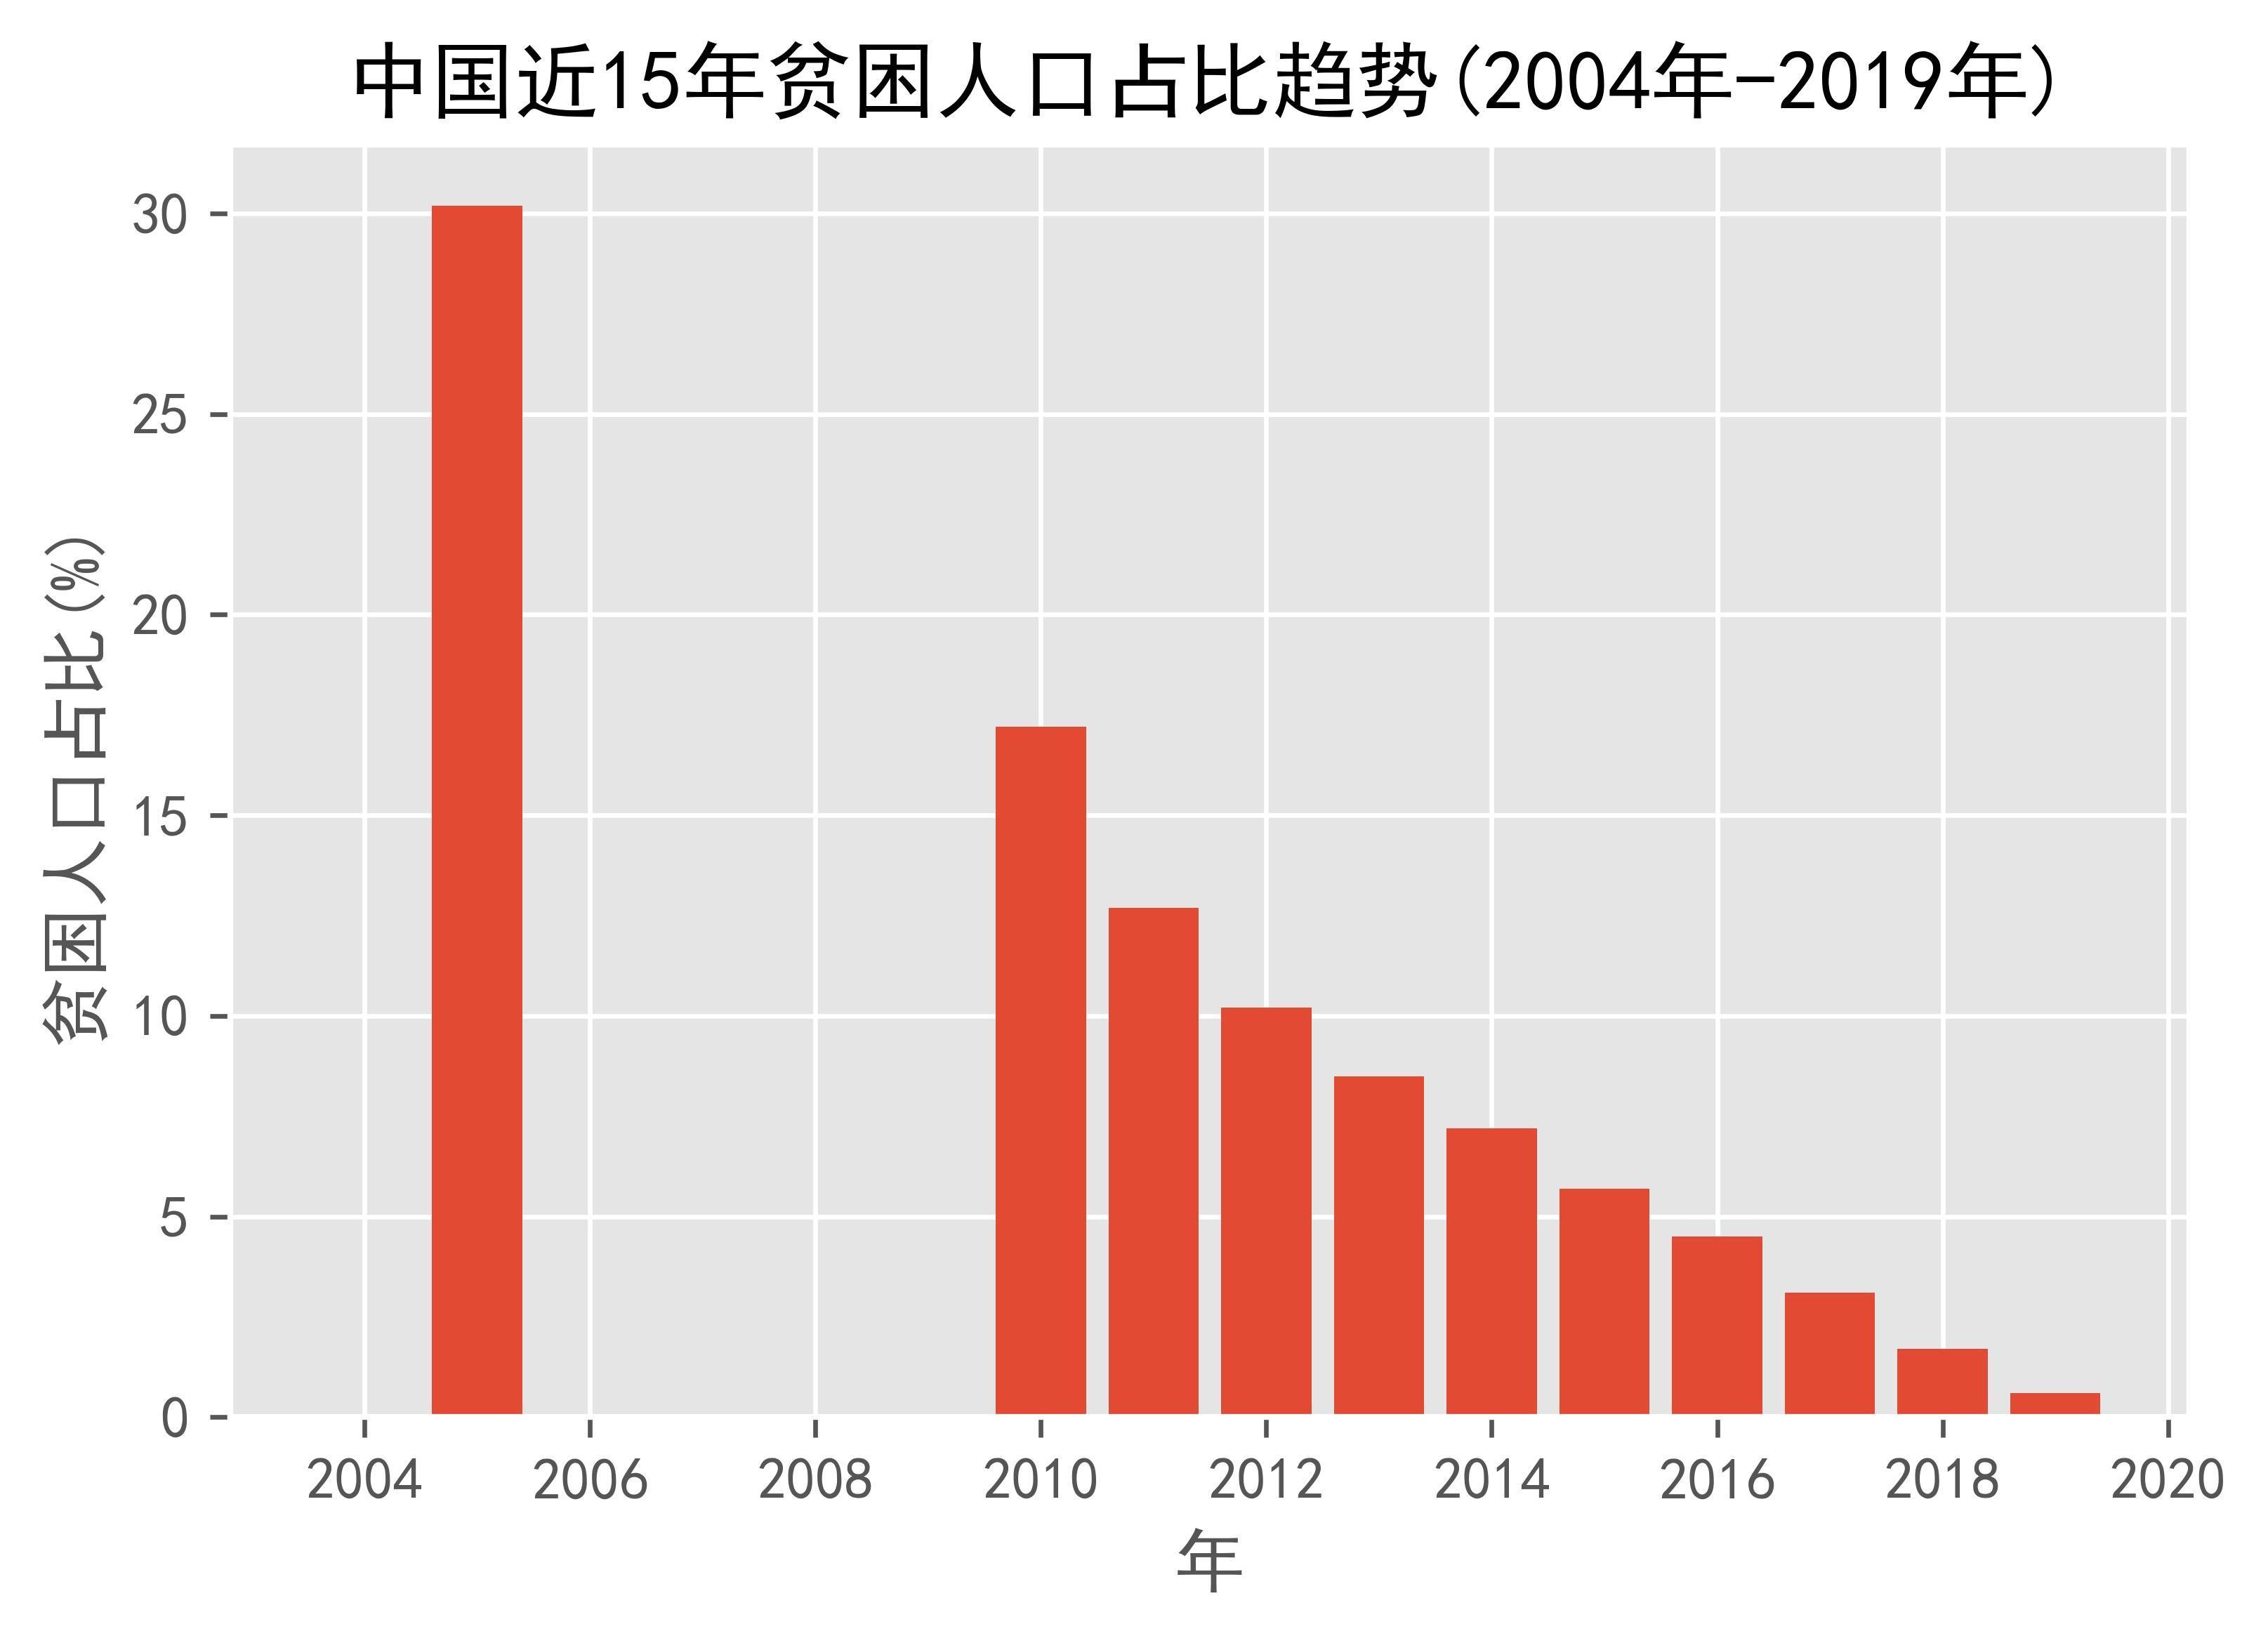 中国近15年贫困人口占比趋势(2004年